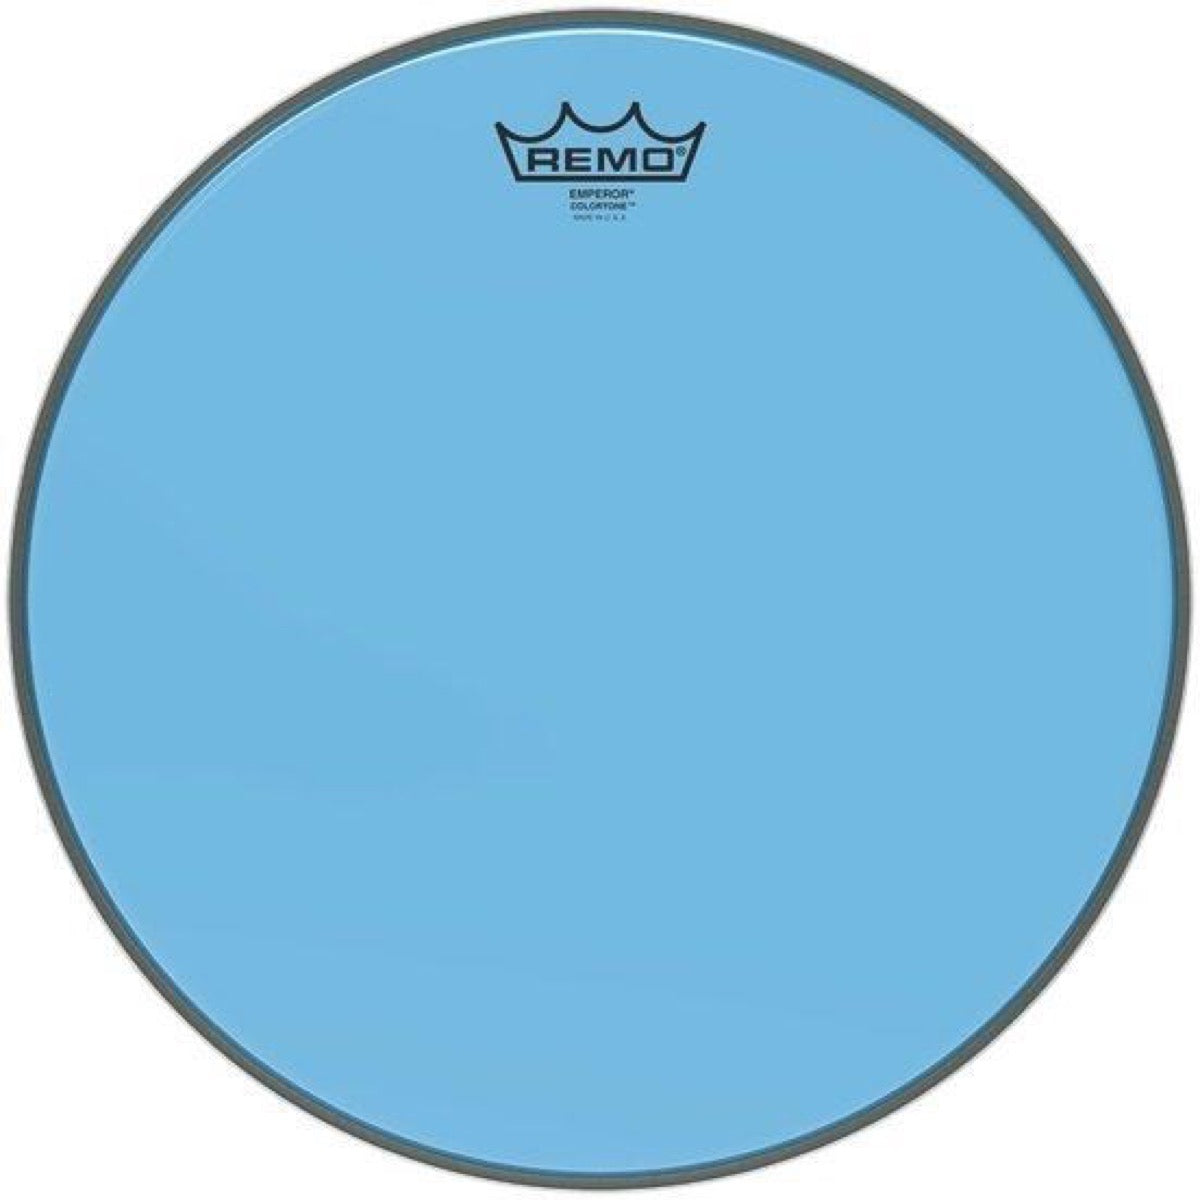 Remo Emperor Colortone Drumhead, Blue, 16 Inch